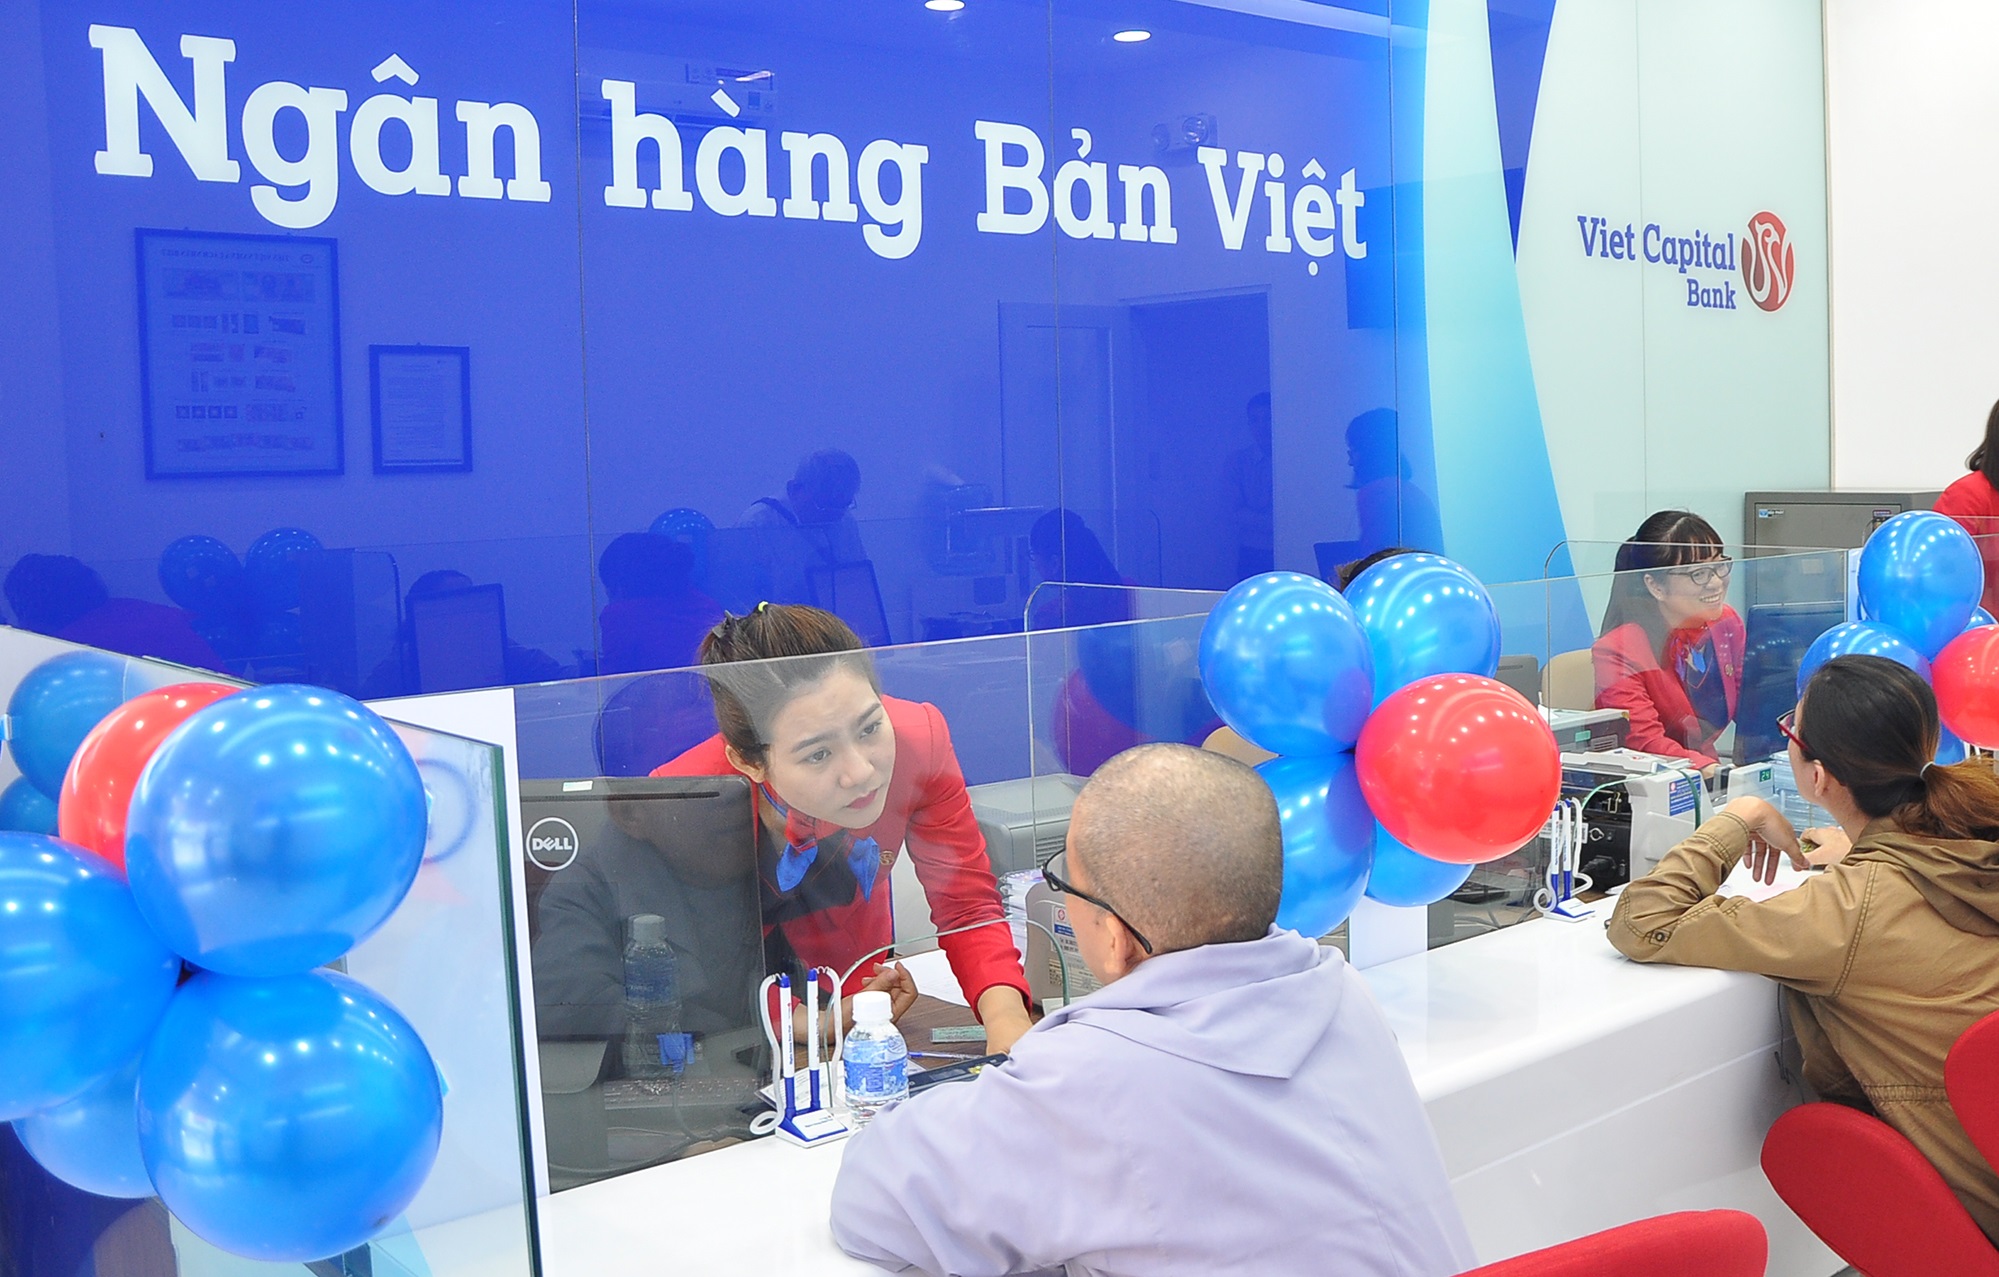 Ngân hàng Bản Việt: Thay đổi để vươn lên mạnh mẽ